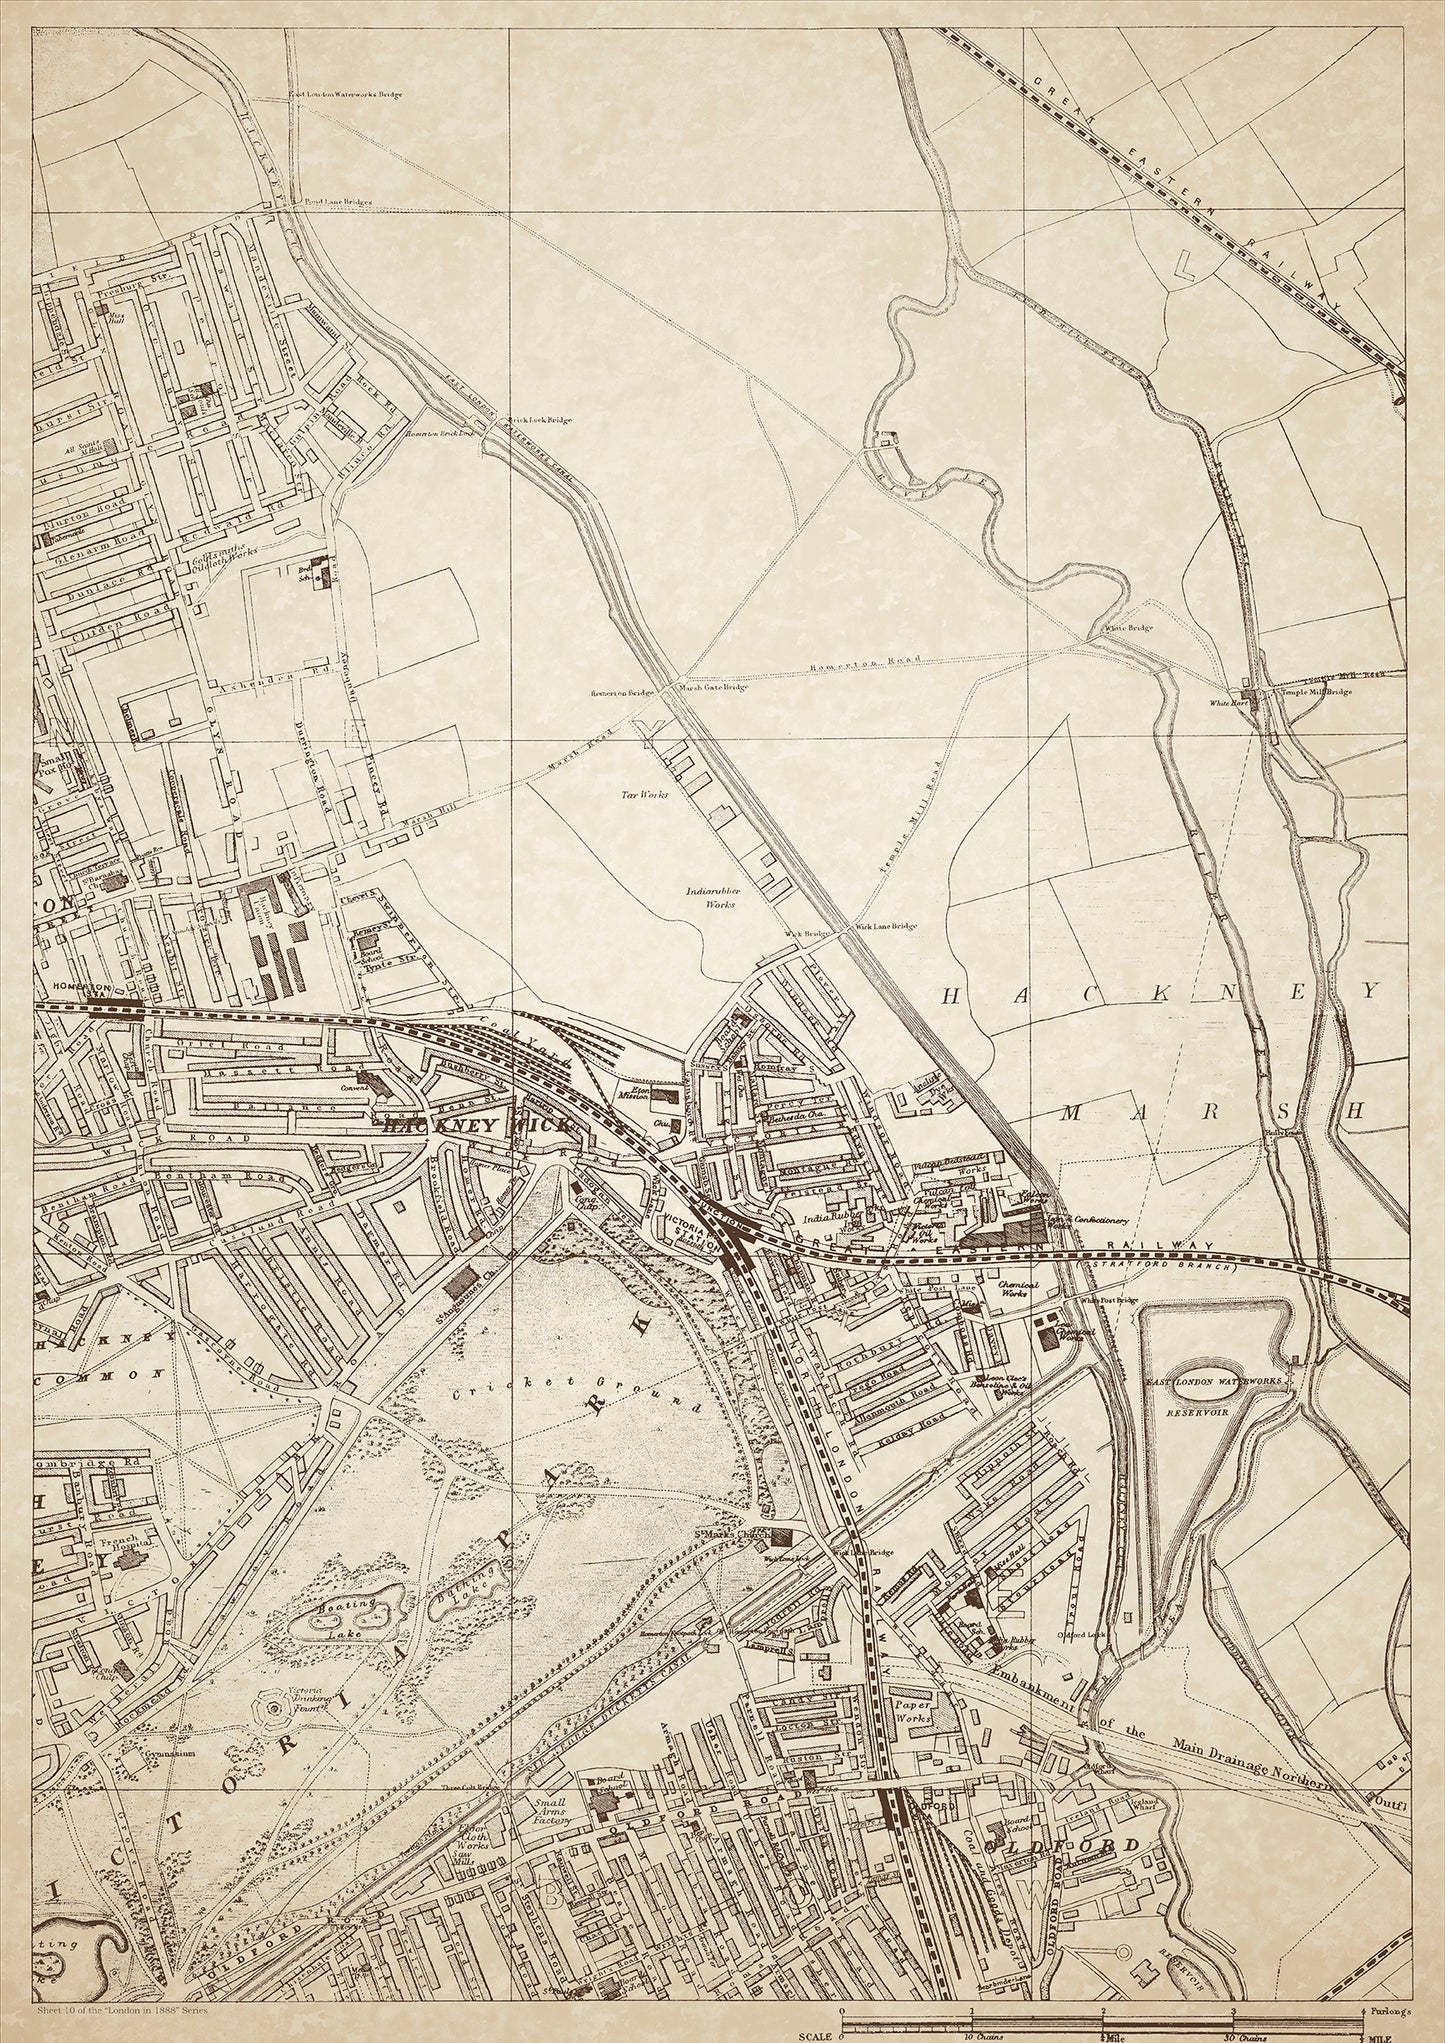 London in 1888 Series - showing Hackney Marsh, Hackney Wick, Oldford - sheet 10